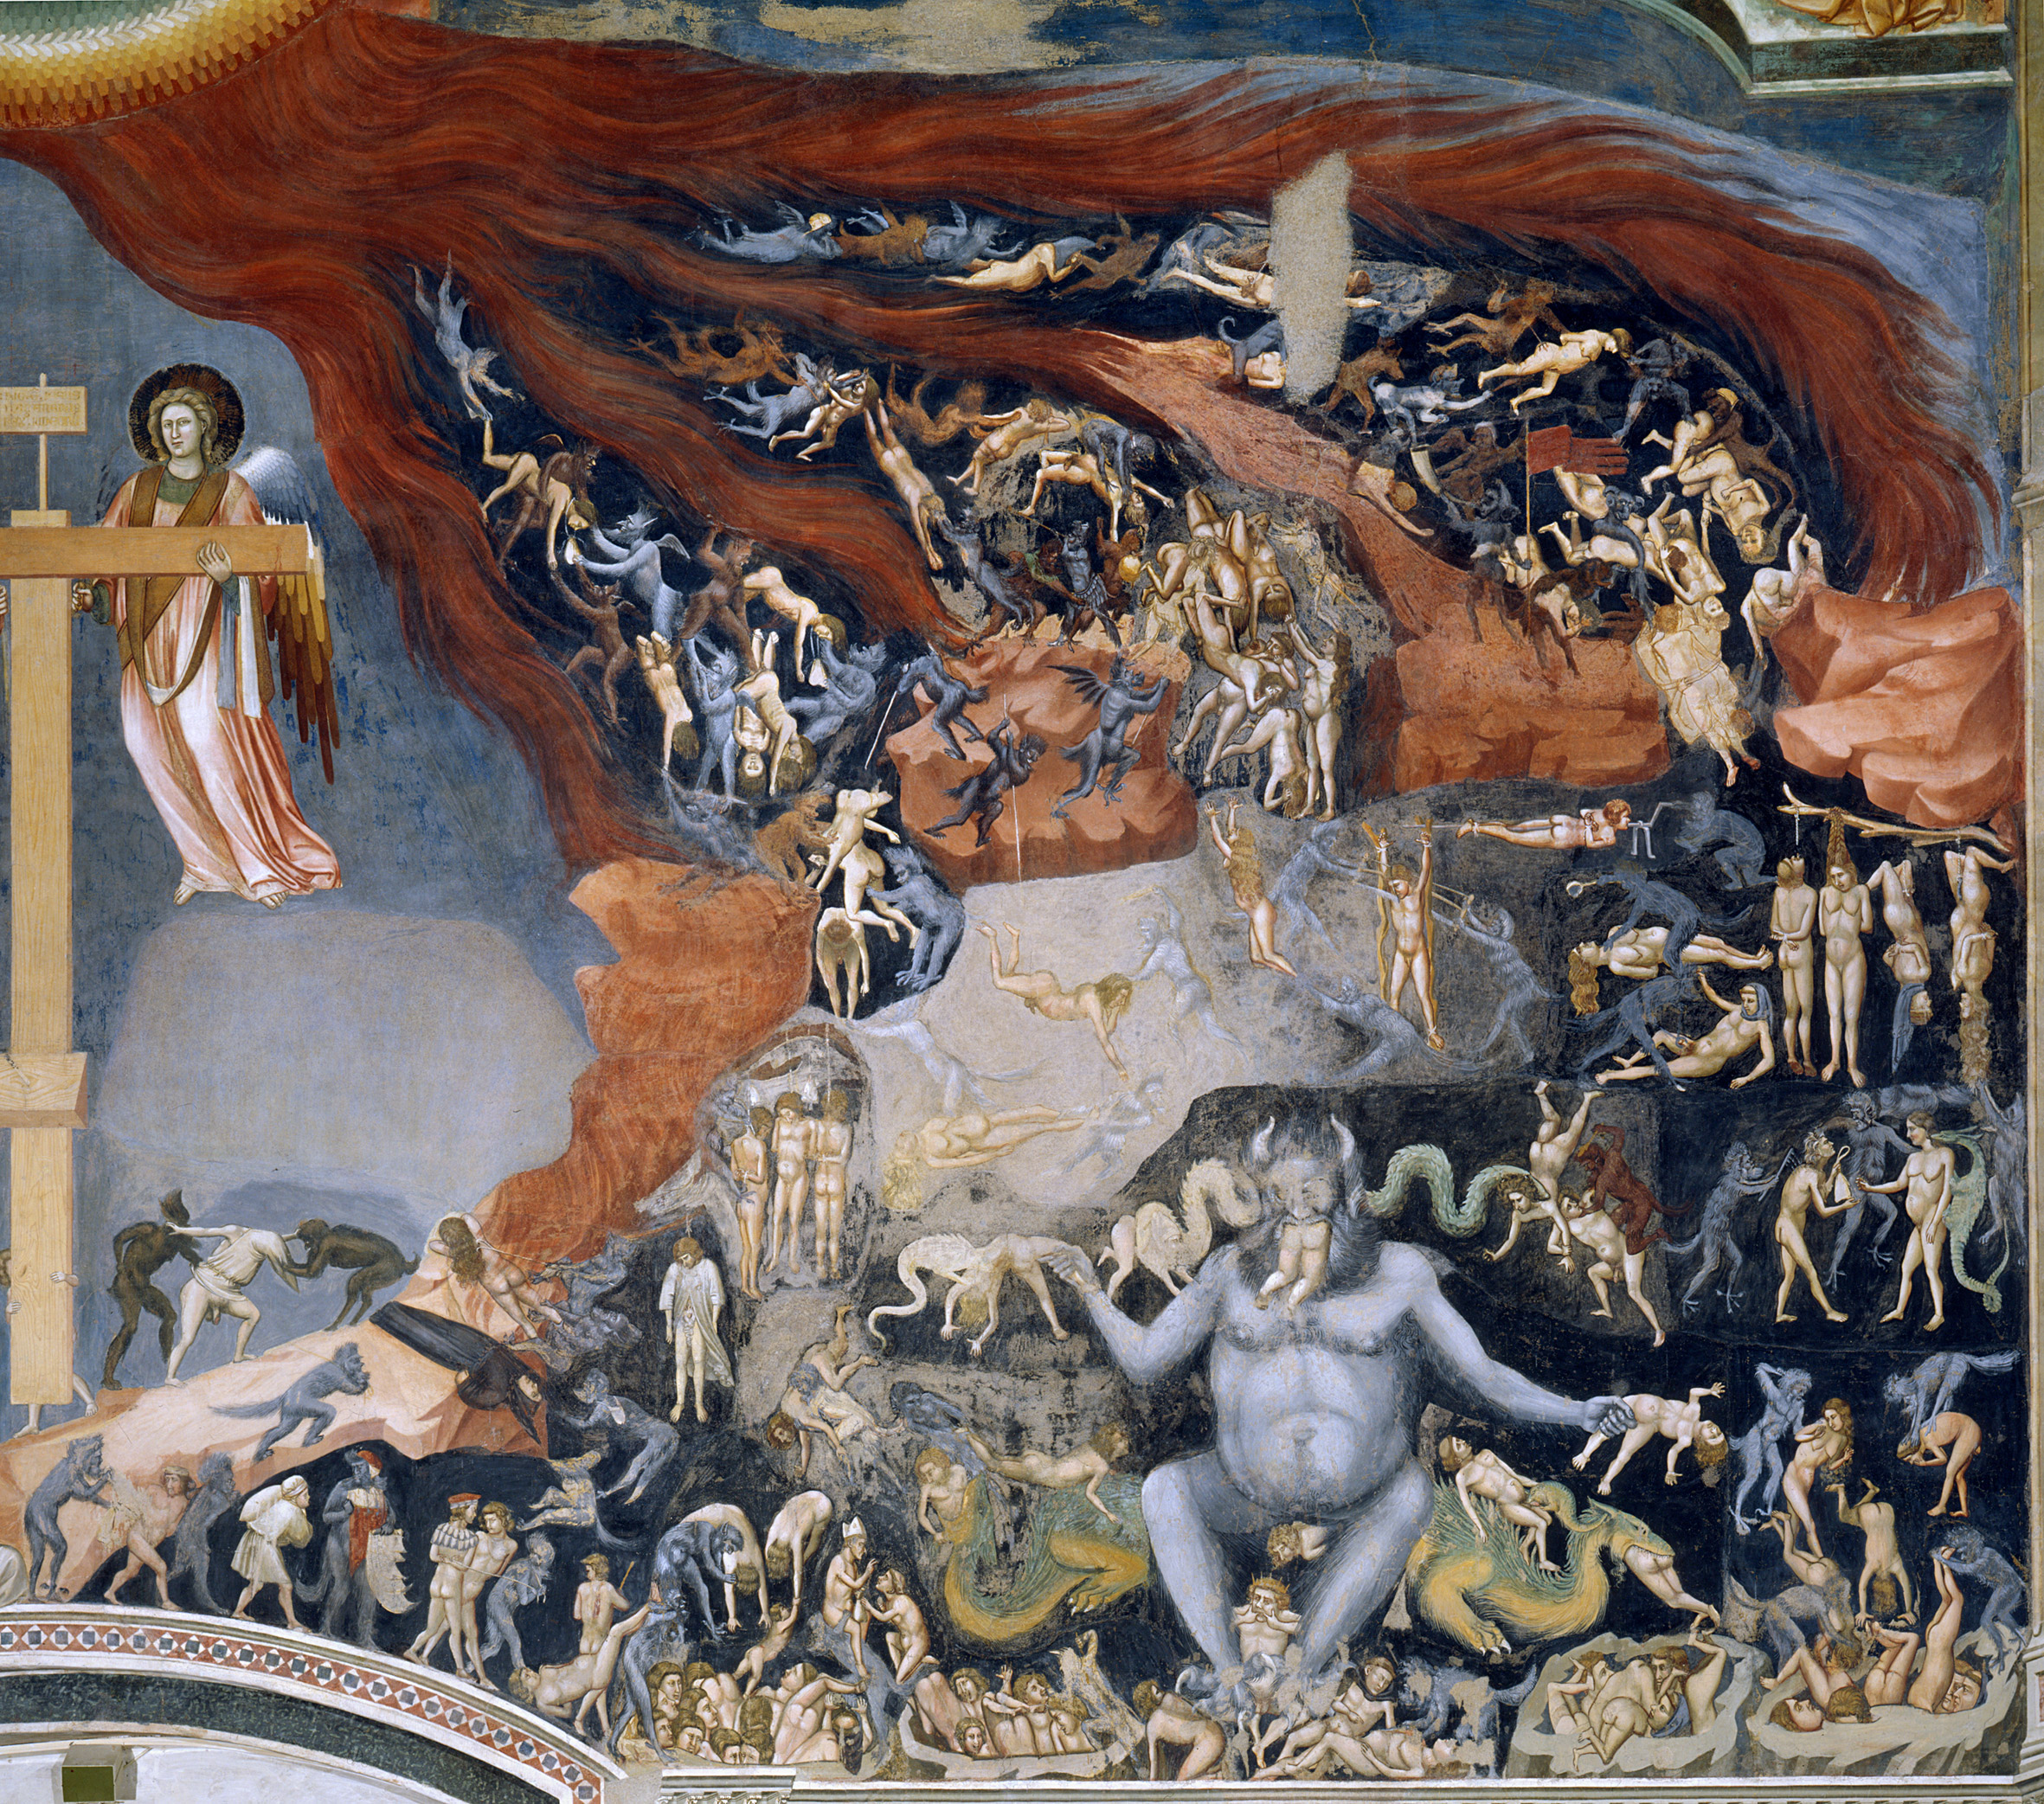 L'enfer, Giotto di Bondone by Giotto di Bondone - 1305 - 1000 × 840 cm Cappella degli Scrovegni